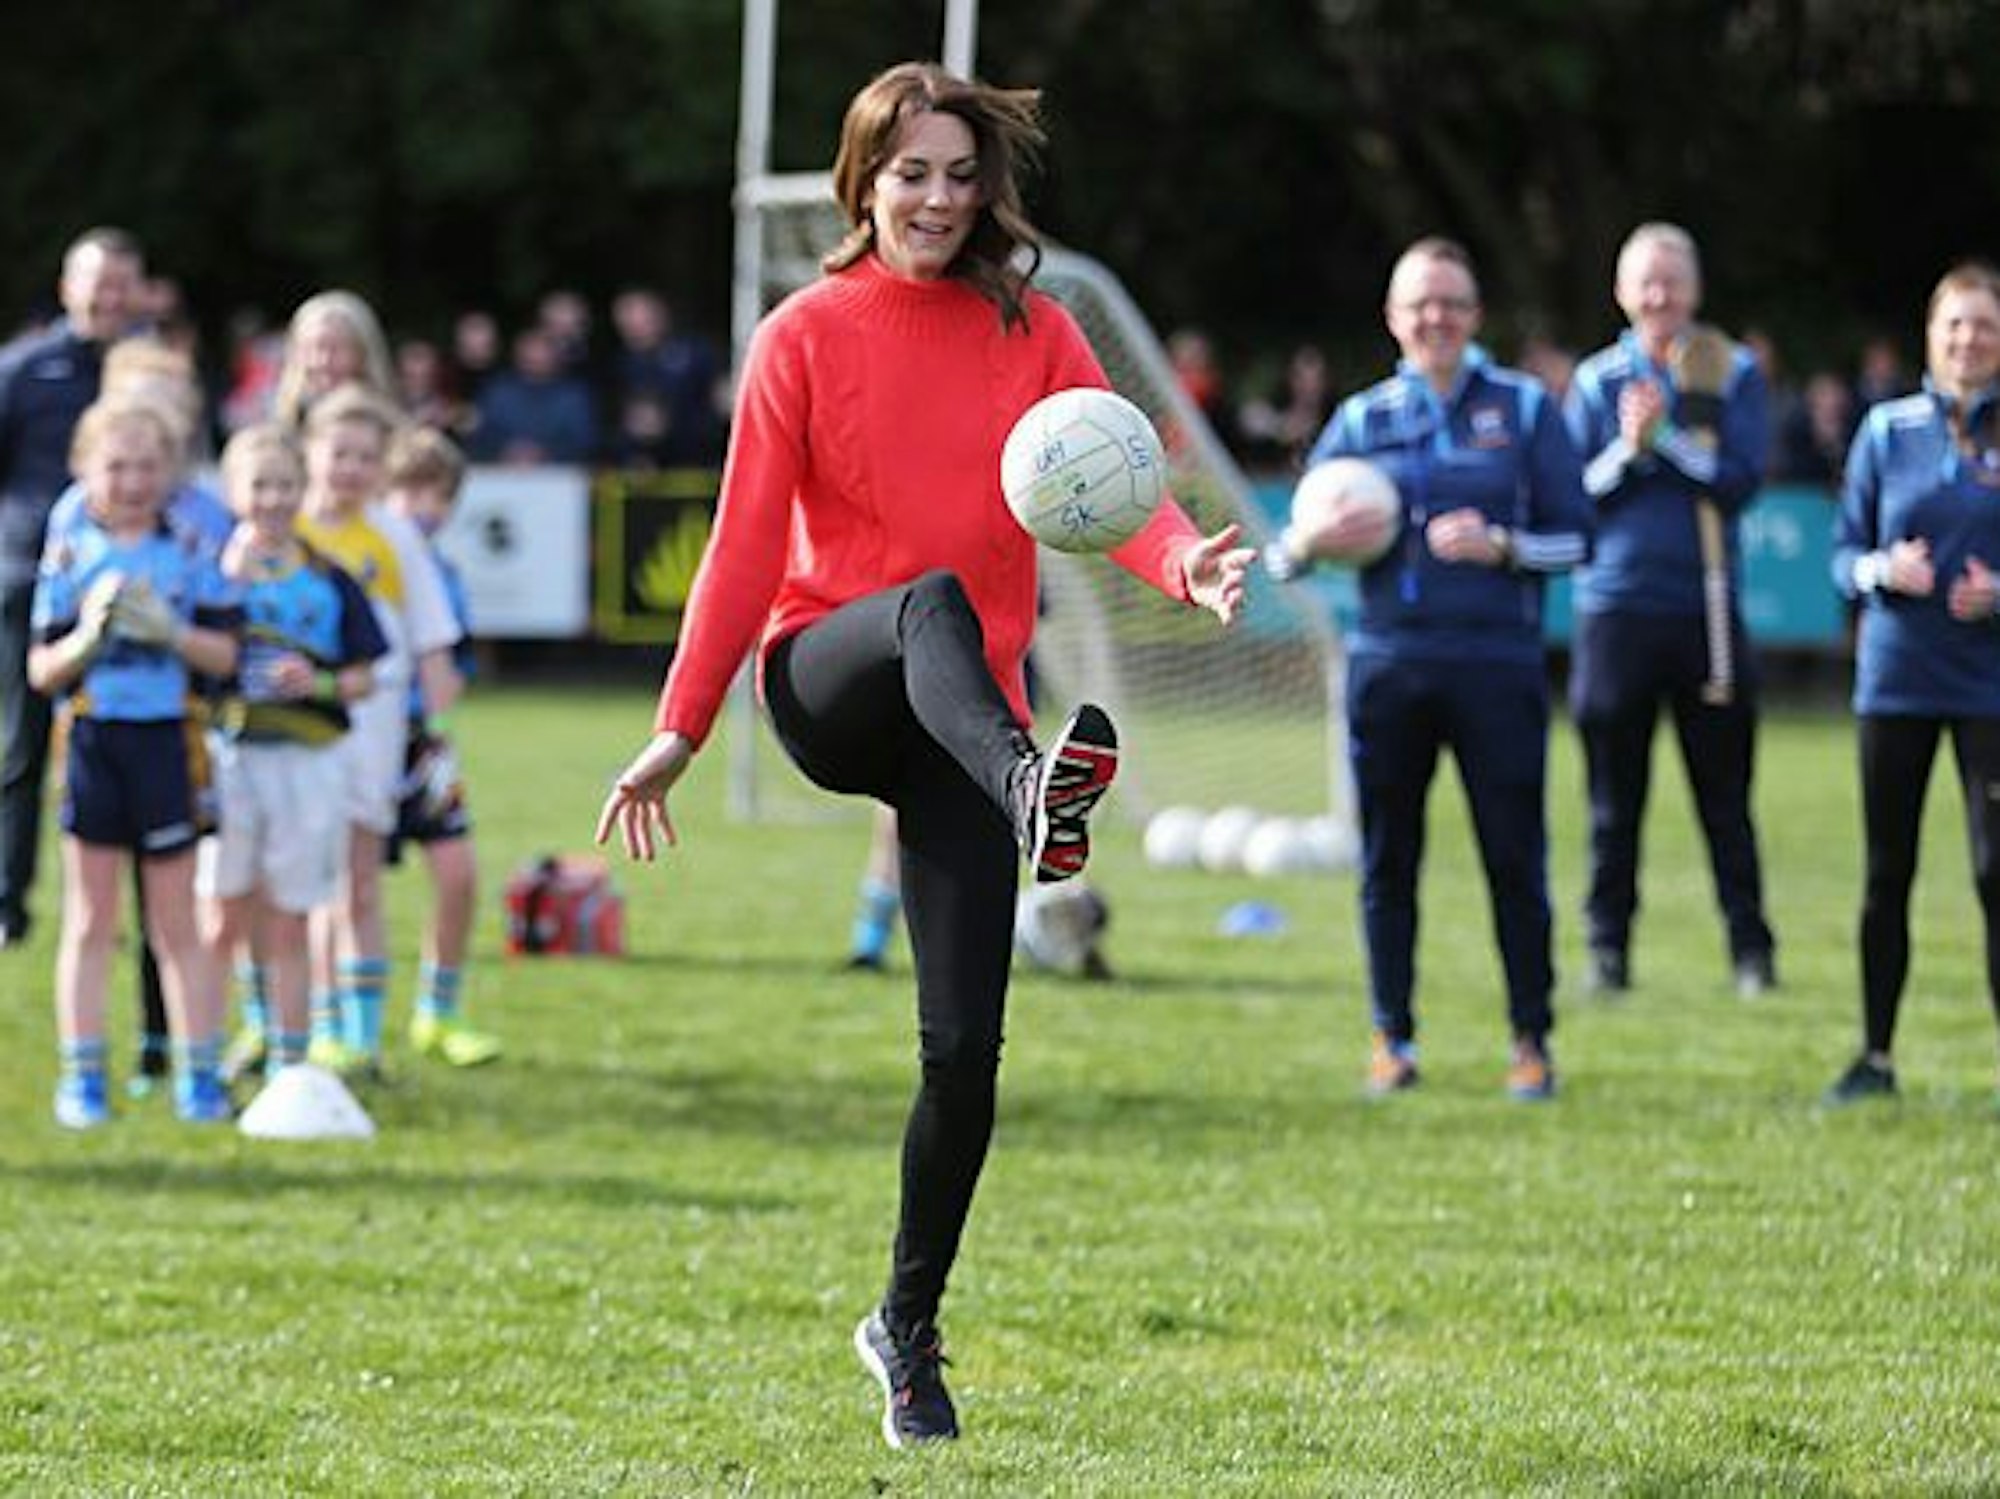 Kate spielt Gaelic Football im Salthill Knocknacarra GAA Club. Gaelic Football ist ein traditioneller Mannschaftsport und ähnelt anderen keltischen Spielen.